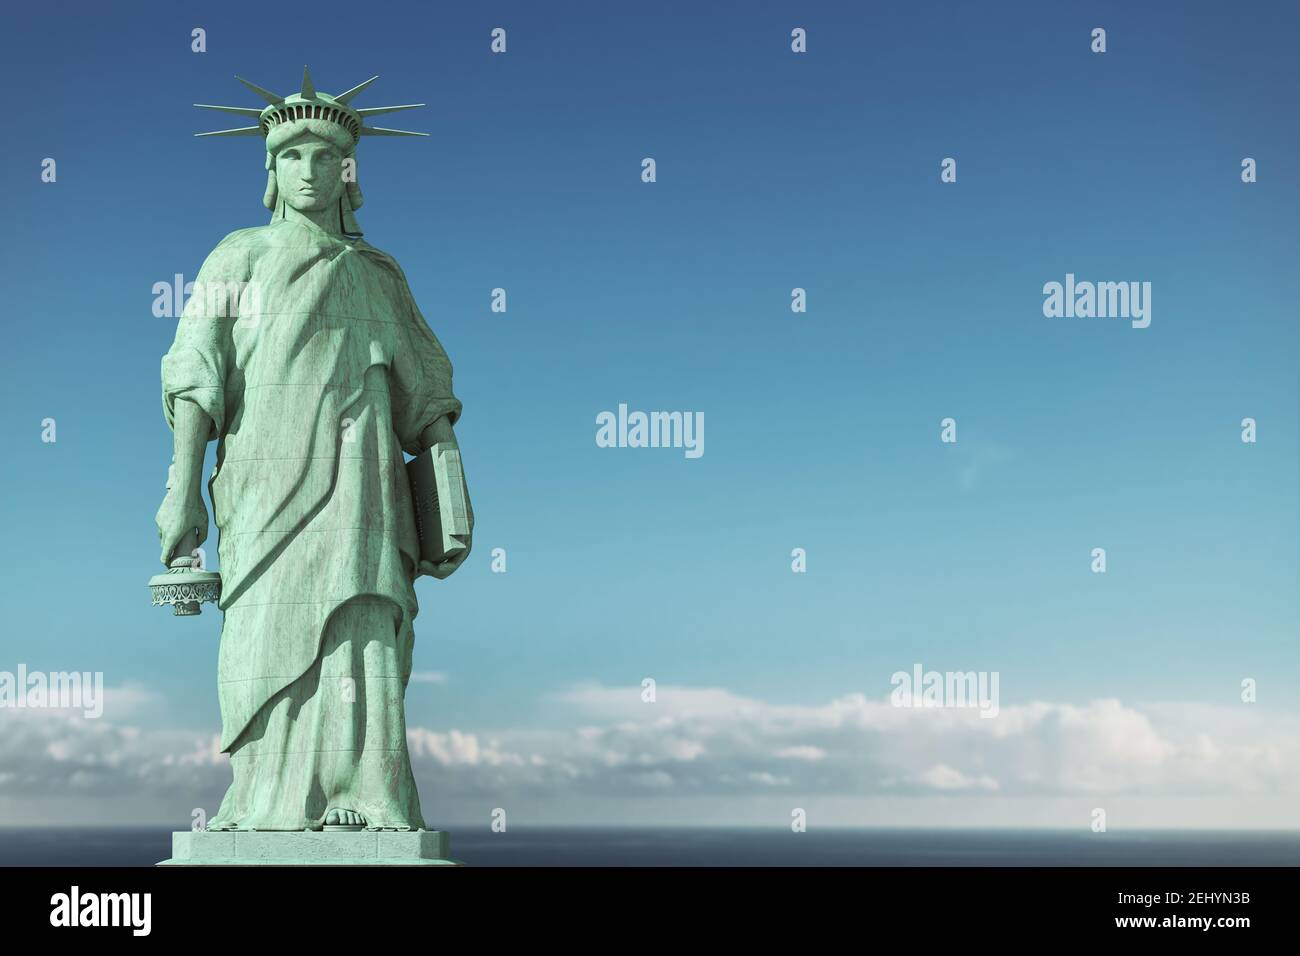 Dépression américaine, États-Unis démocratie problèmes concept. Triste et déprimée Statue de la liberté avec une torche abaissée. illustration 3d Banque D'Images